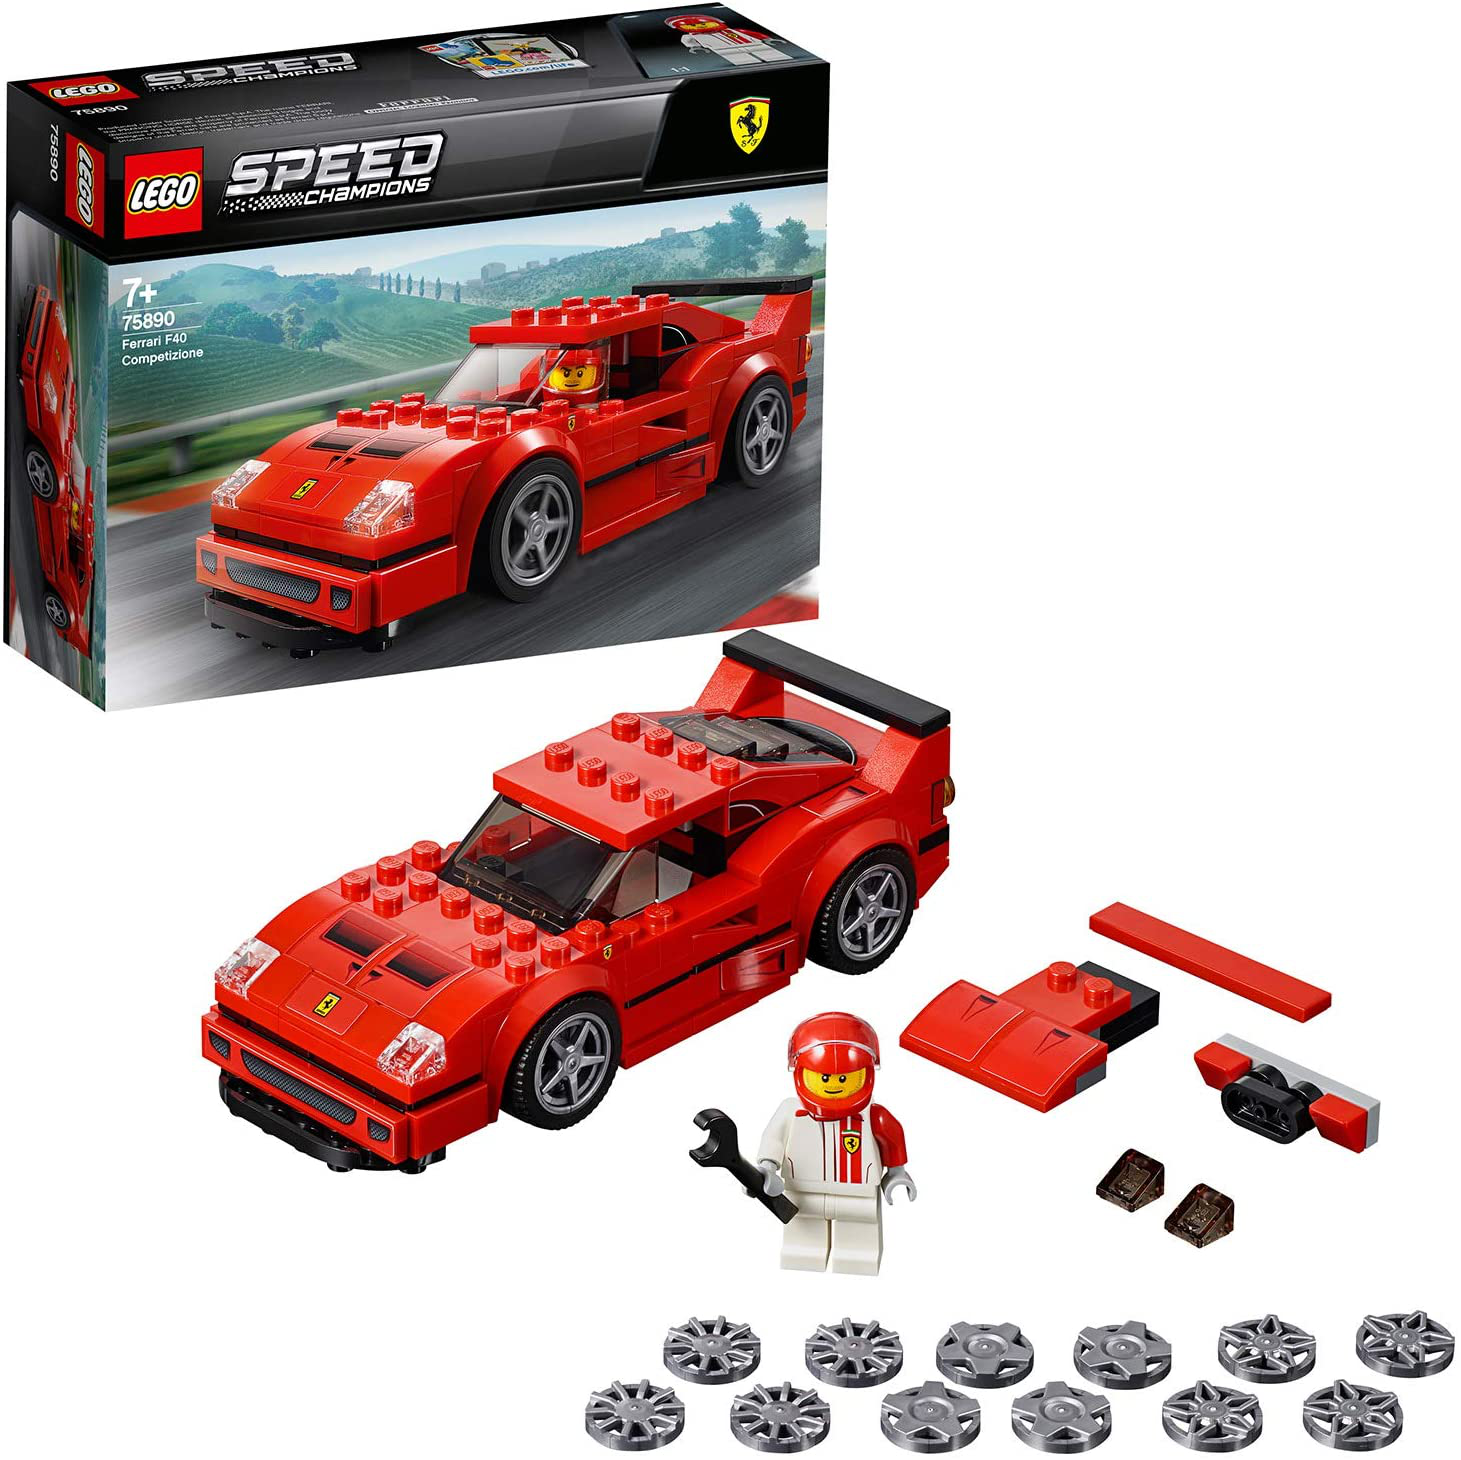 LEGO SPEED CHAMPION FERRARI F40 COMPETIZIONE